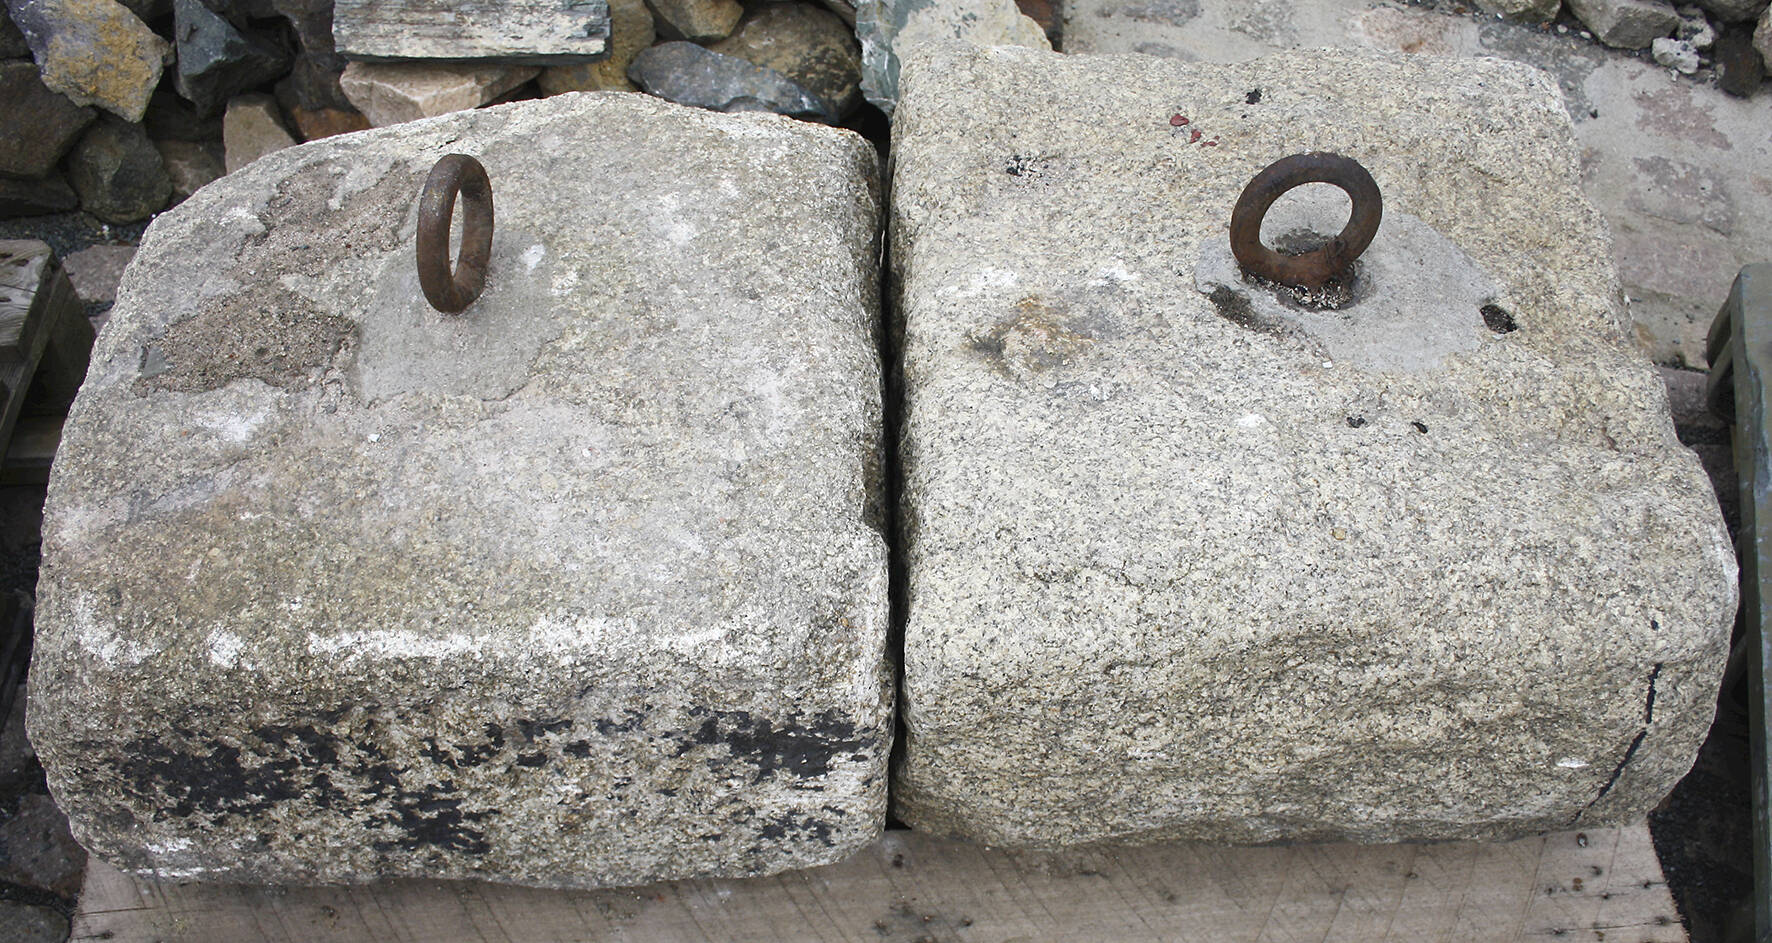 Paar Steingewichte Granit